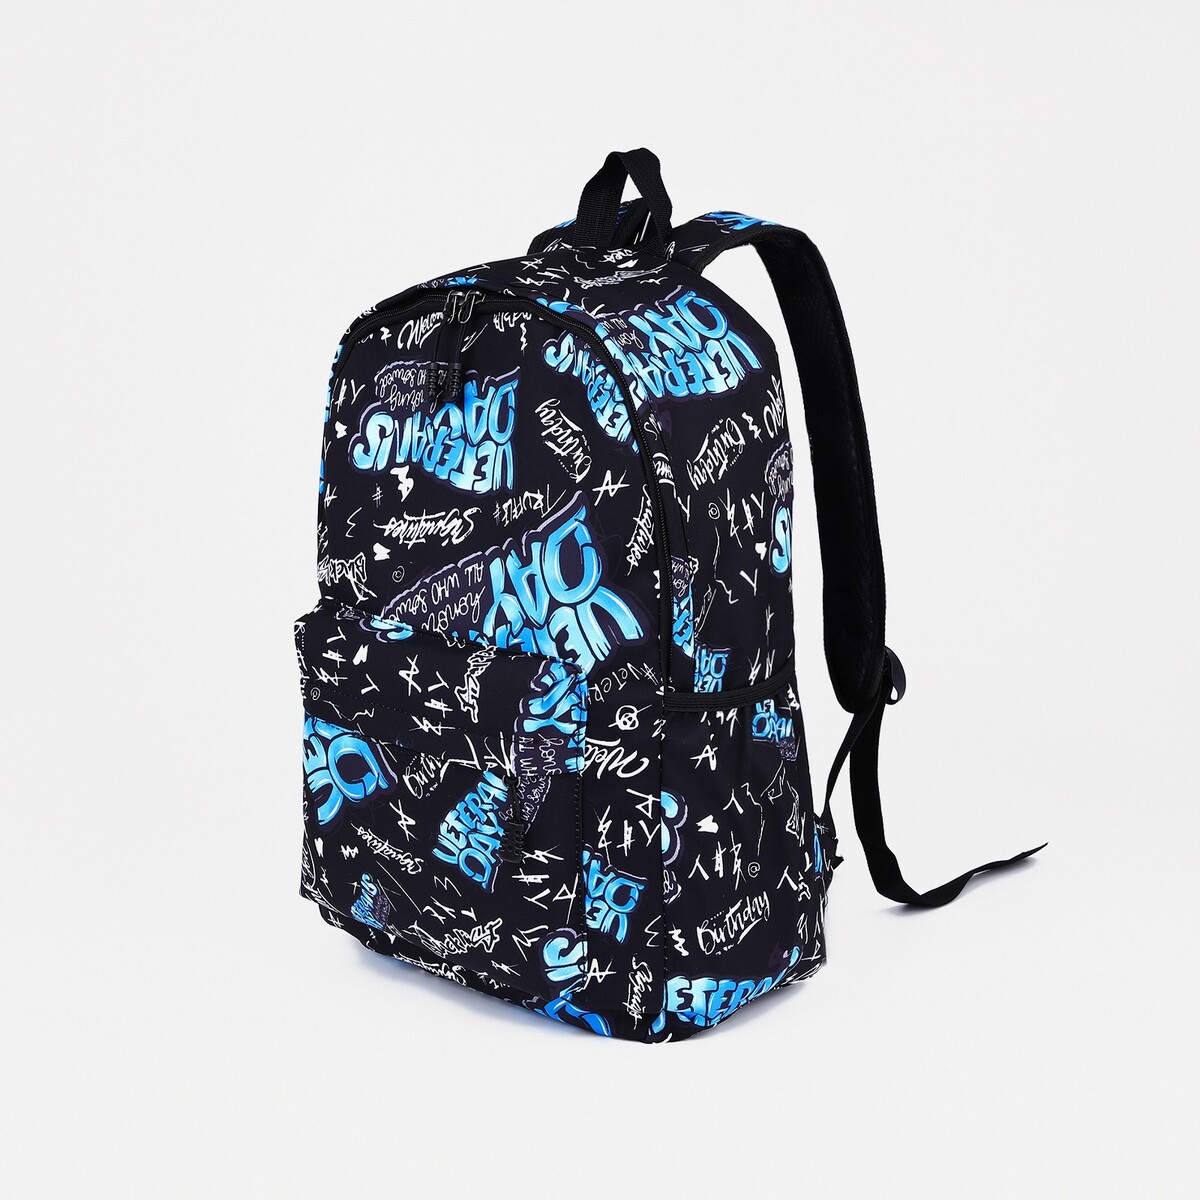 Рюкзак на молнии, 3 наружных кармана, цвет синий/черный